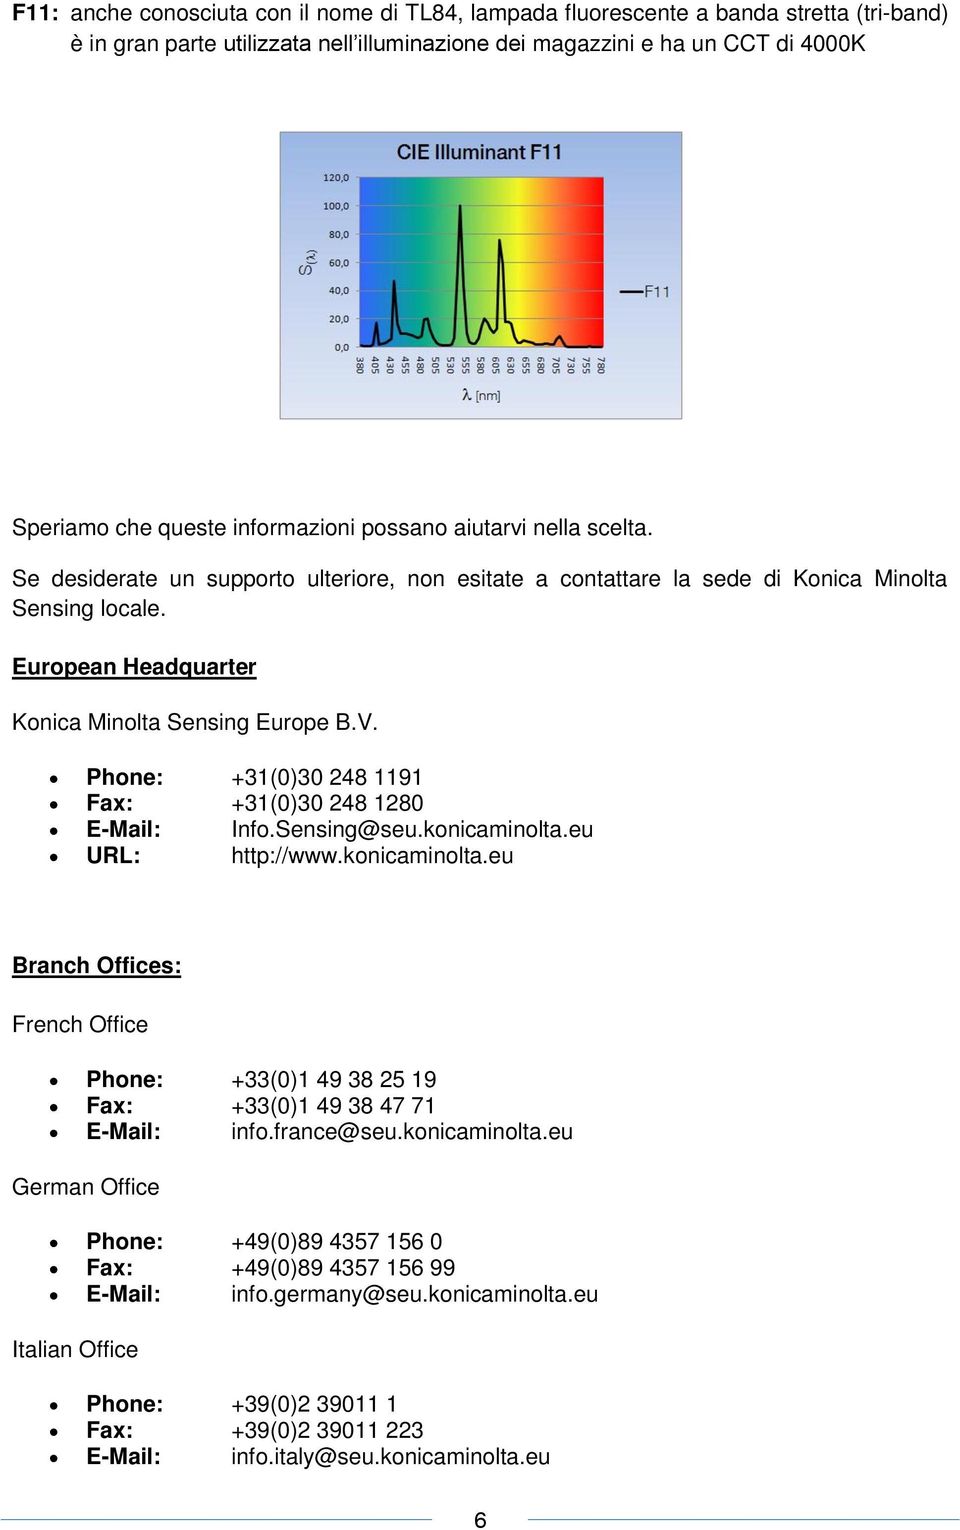 European Headquarter Konica Minolta Sensing Europe B.V. Phone: +31(0)30 248 1191 Fax: +31(0)30 248 1280 E-Mail: Info.Sensing@seu.konicaminolta.